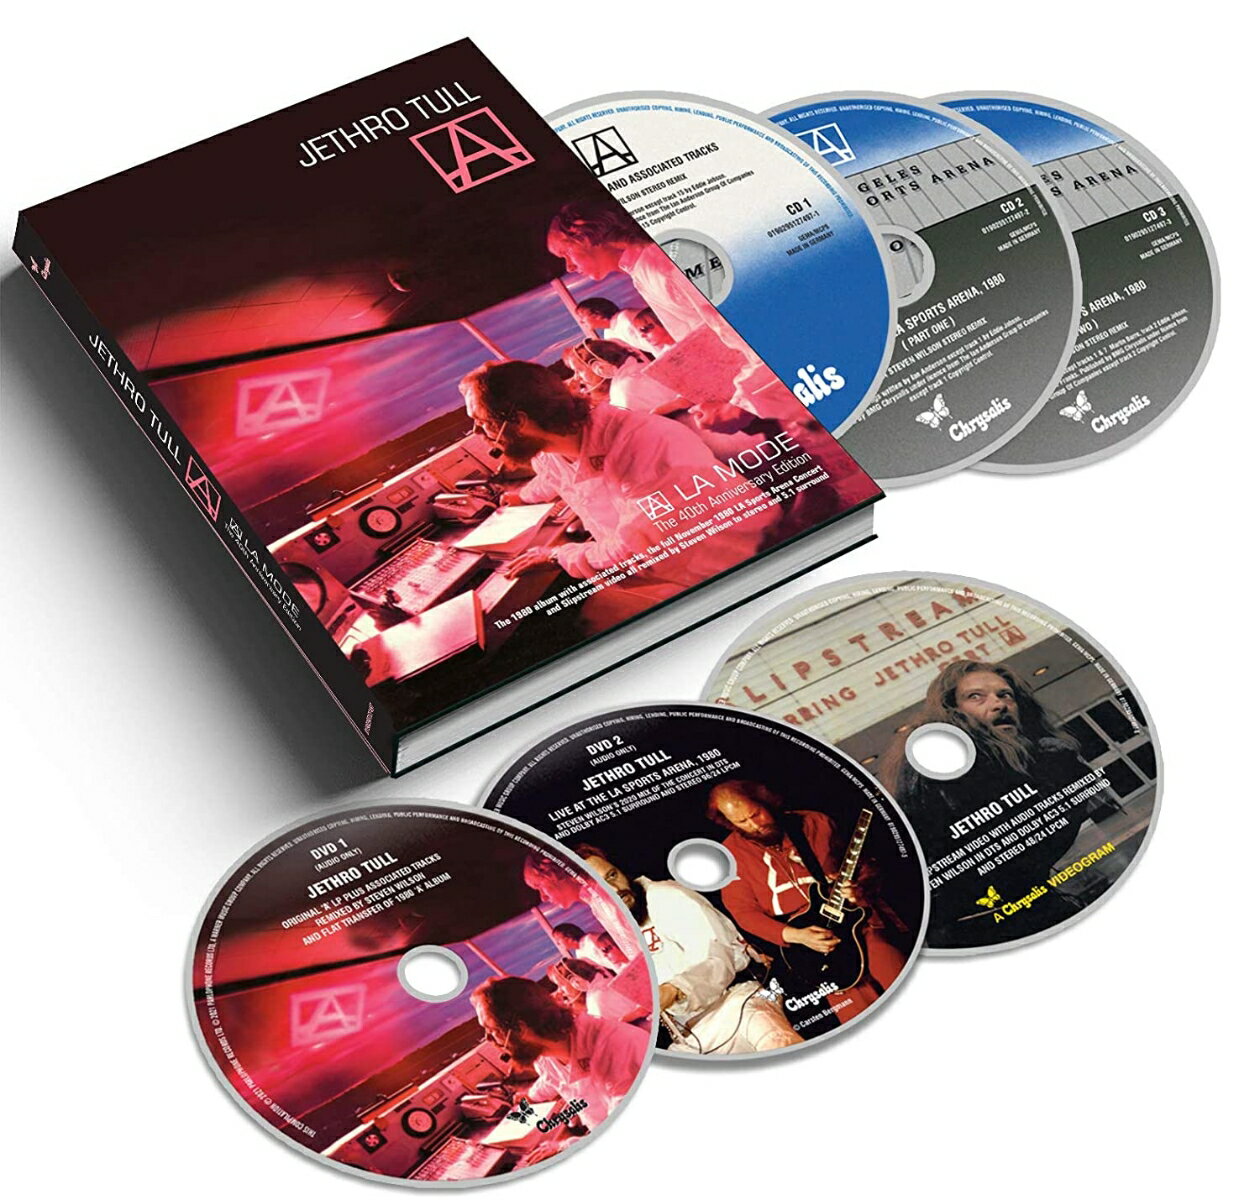 ジェスロタル Jethro Tull - A (A La Mode) (The 40th Anniversary Edition)(3CD)(3DVD) CD アルバム